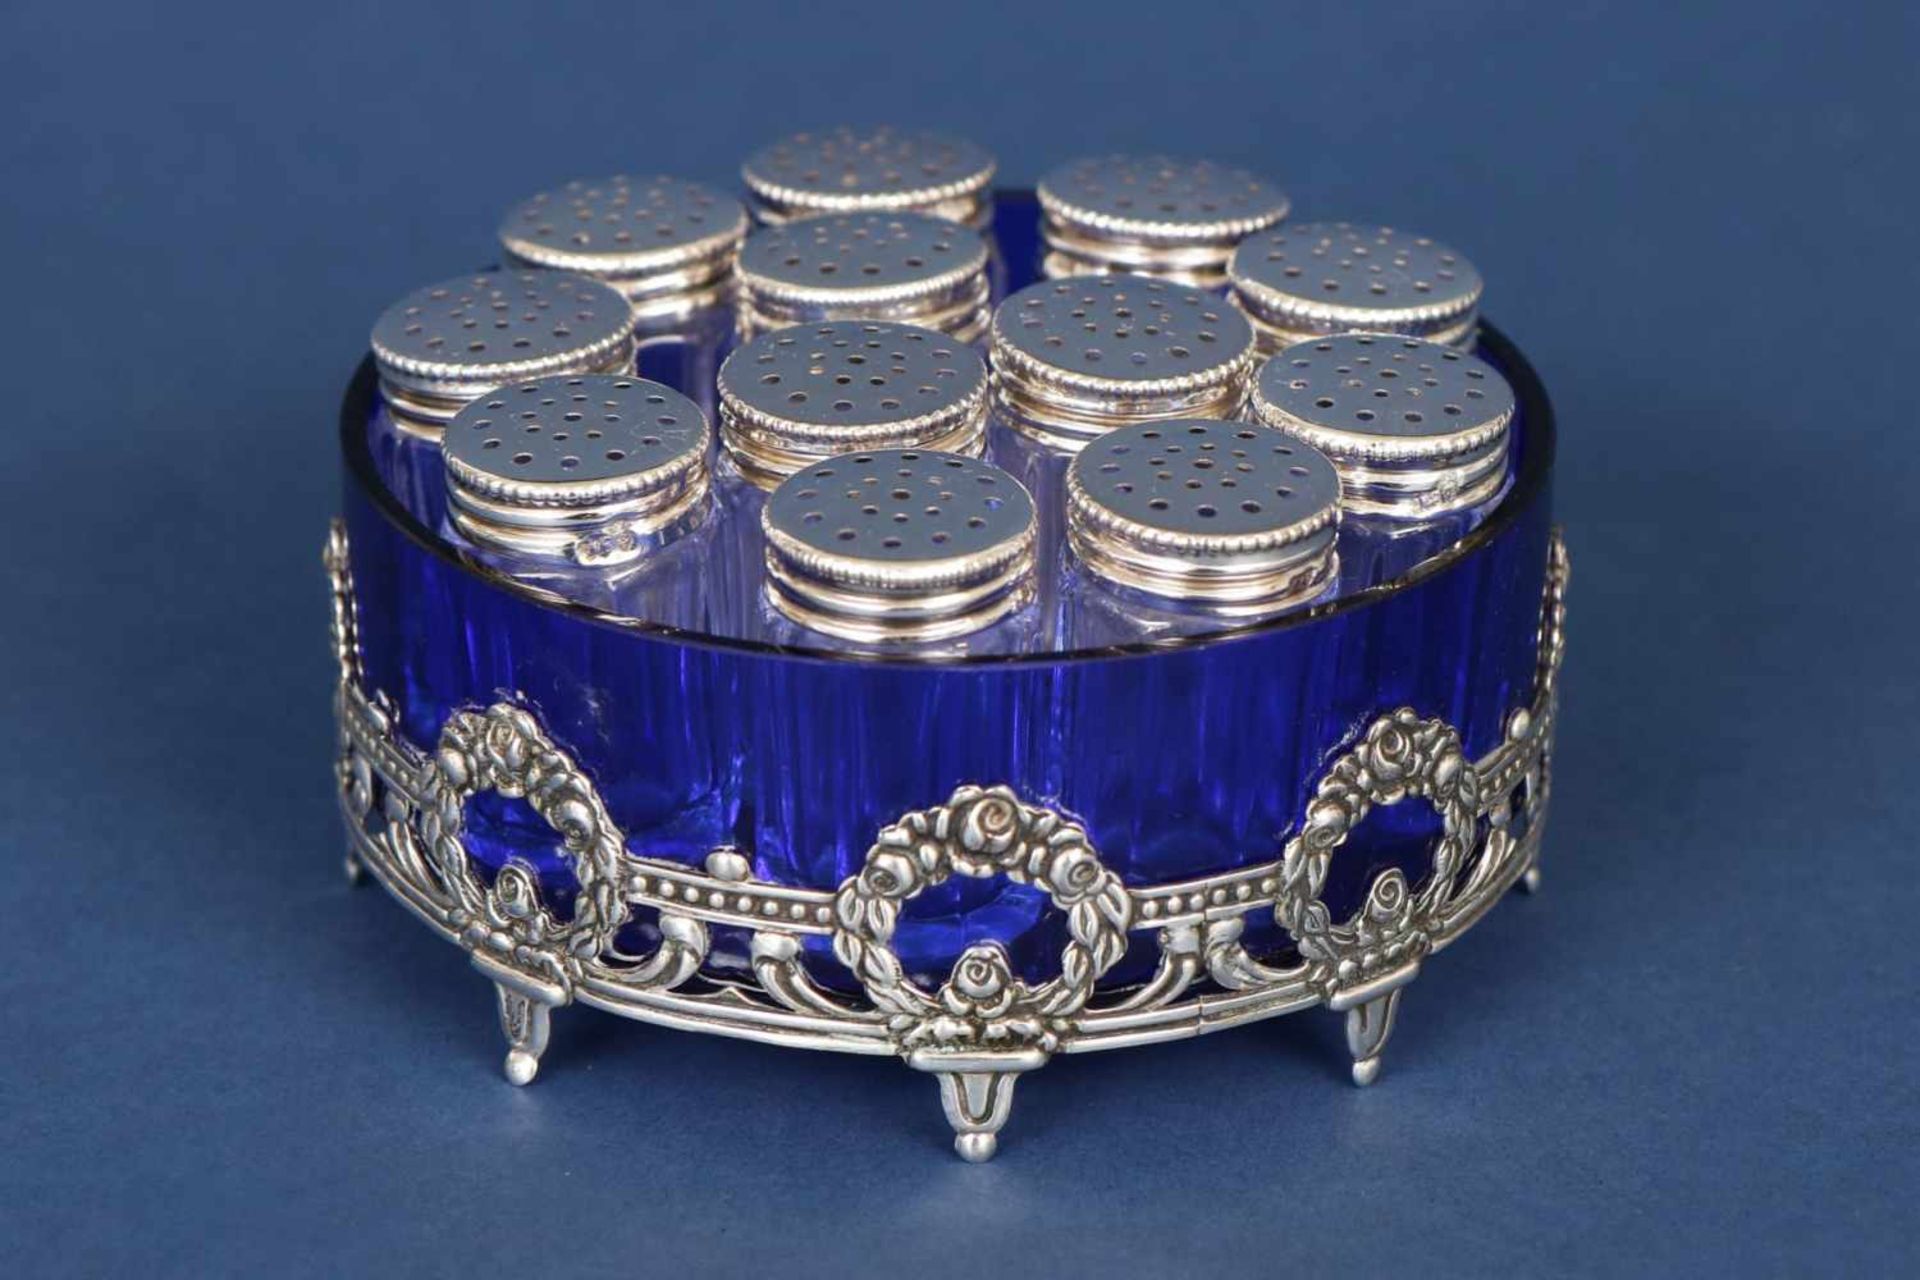 12 kleine Tisch-GewürzstreuerKristall, facettiert, mit Silber-Deckeln, in blauer Glas-Schale in